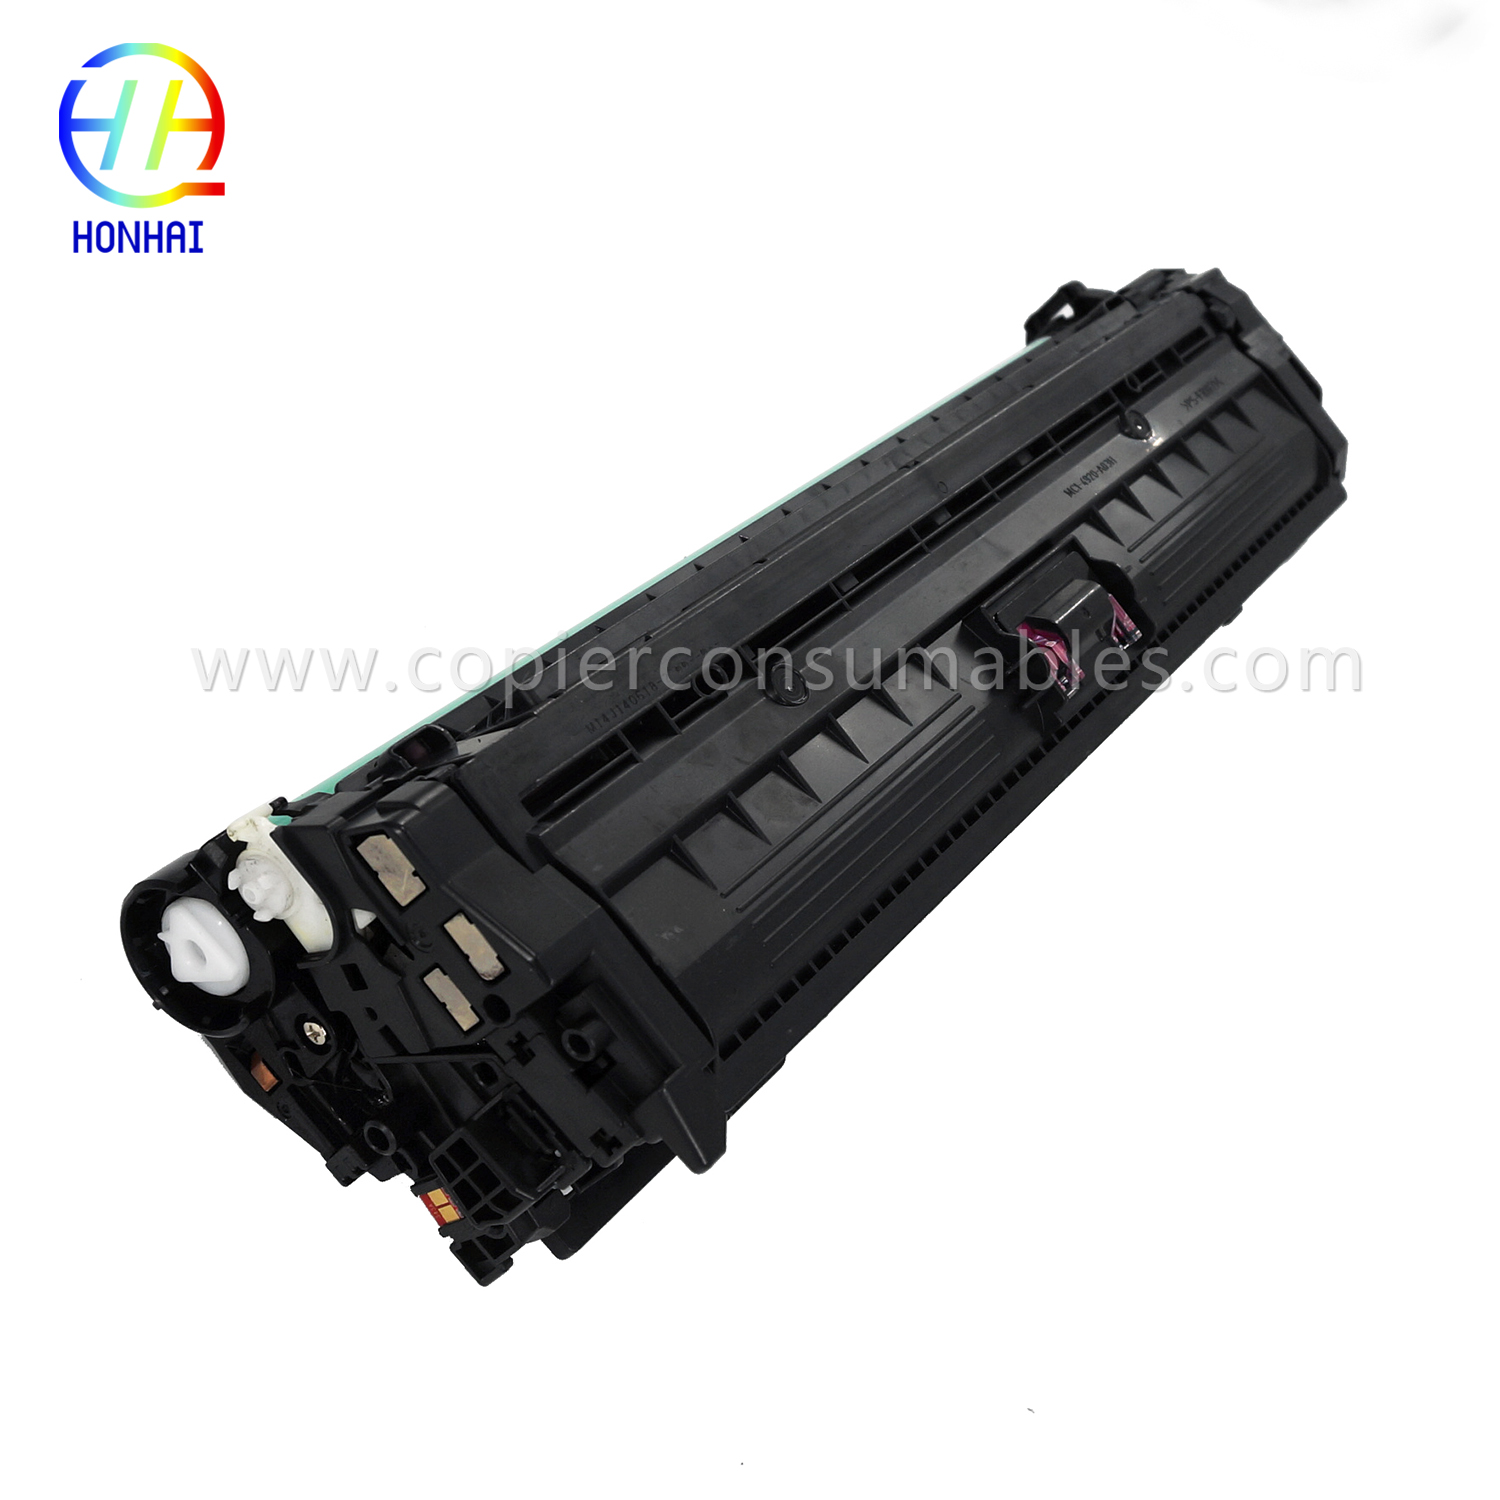 I-Toner Cartridge HP LaserJet Enterprise 700 Color M775dn M775f M775z M775z+ (CE343A 651A) (9) 拷贝